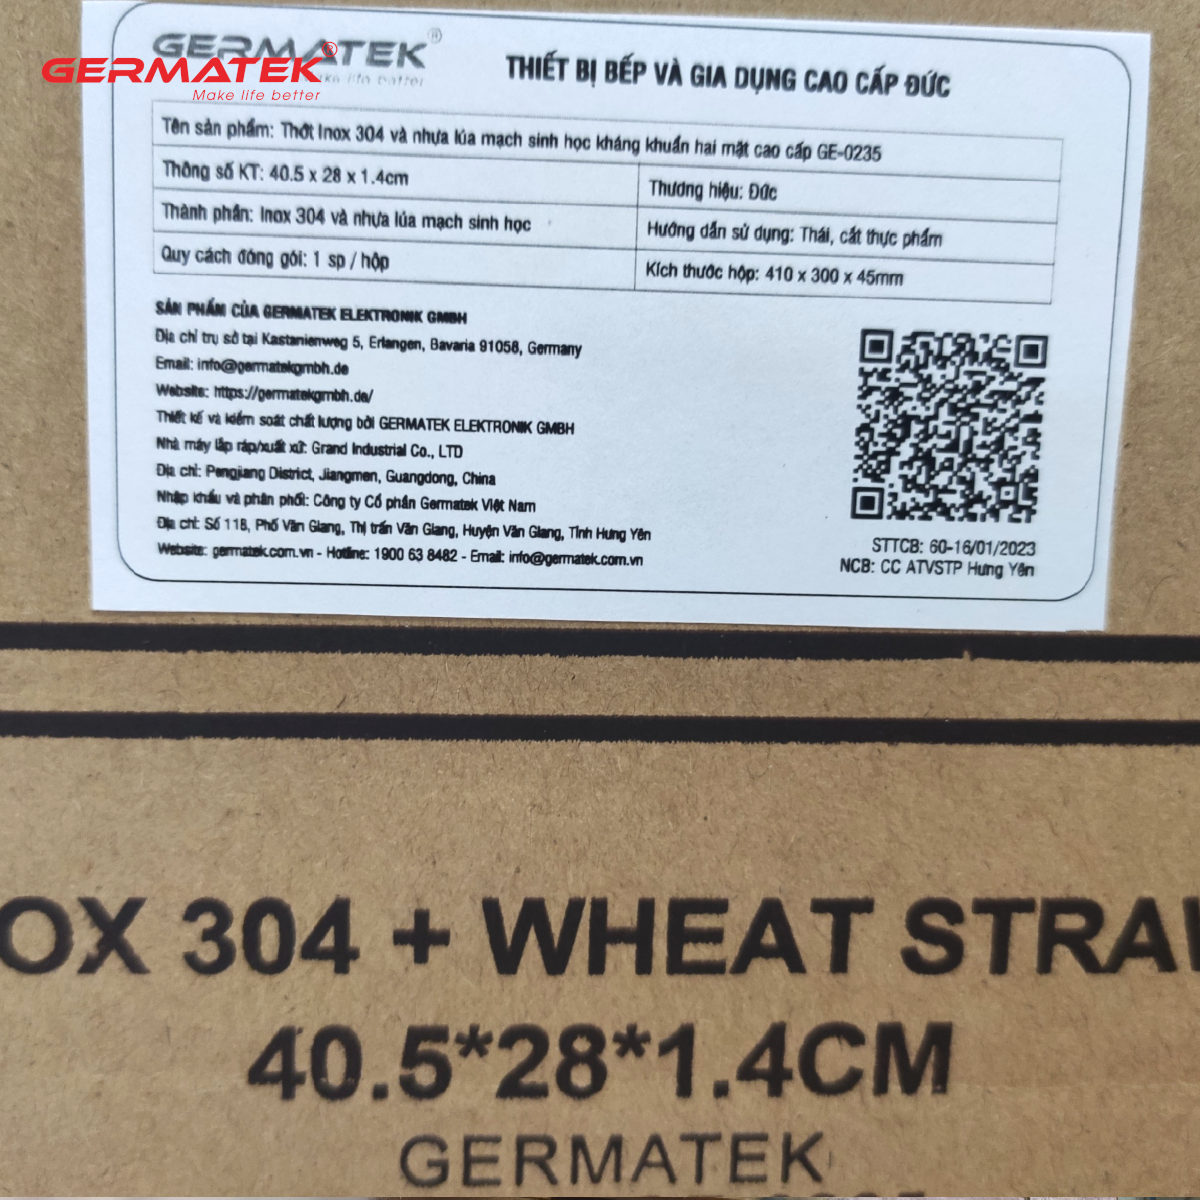 Thớt 2 mặt Inox 304 và nhựa lúa mạch kháng khuẩn Germatek GE-0235 chuẩn hàng Đức